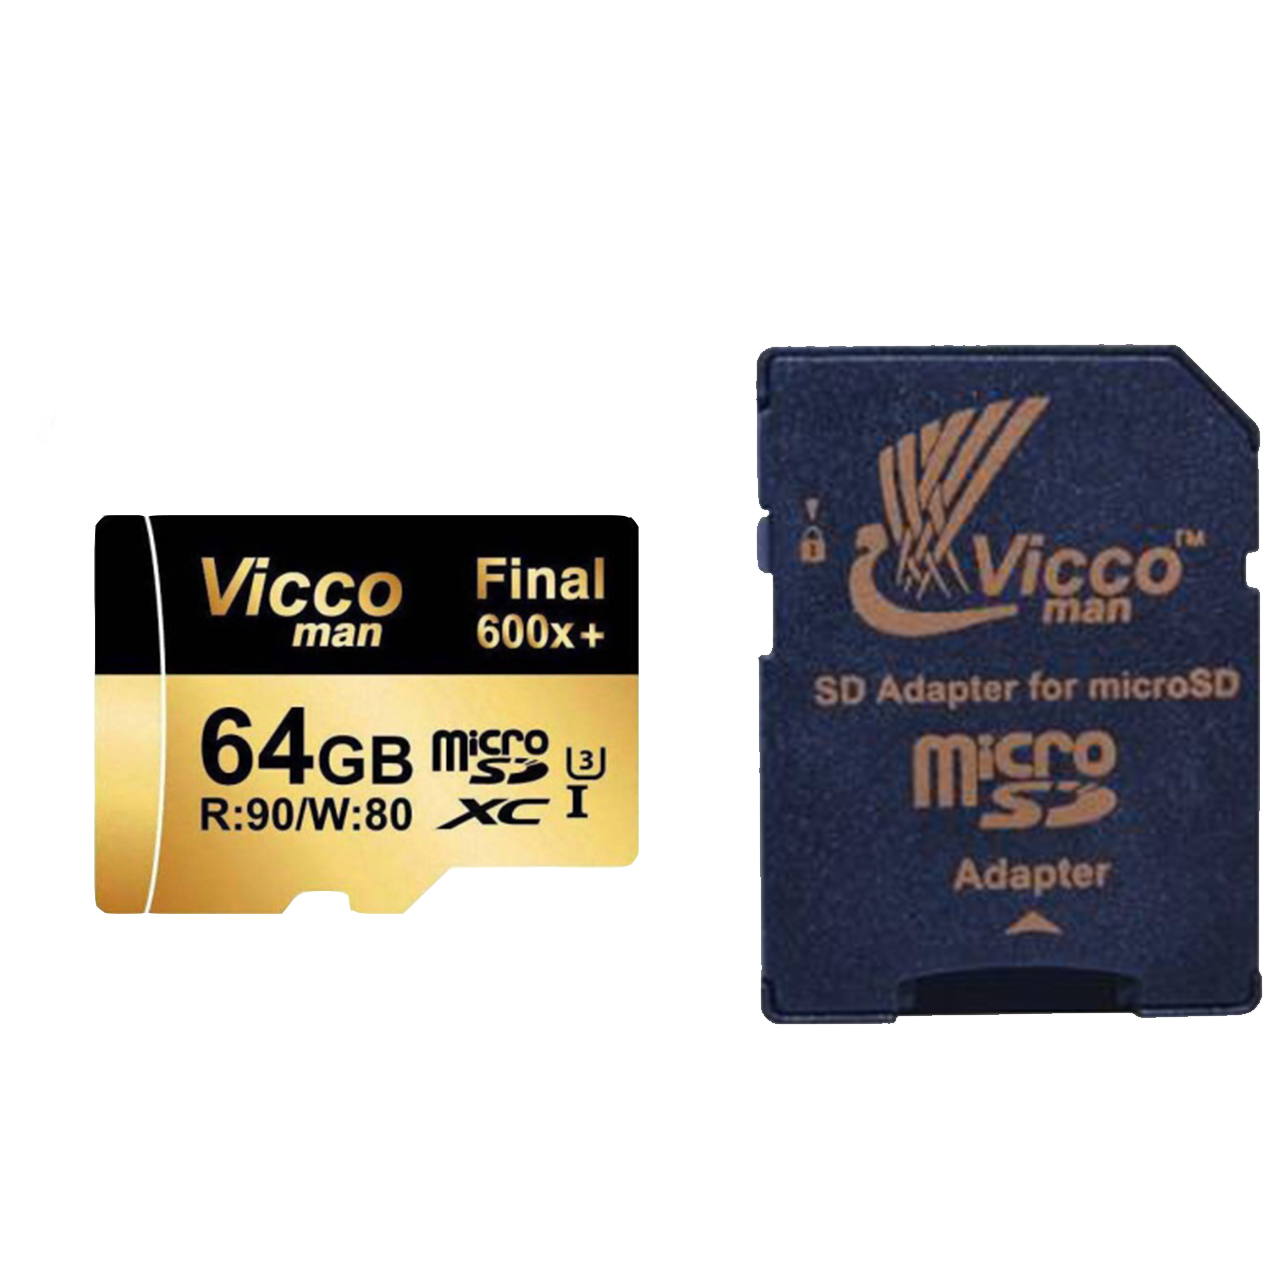 آنباکس کارت حافظه microSDXC ویکومن مدل 600x plus کلاس 10 استاندارد UHS-I U3 سرعت 90MBs ظرفیت 64 گیگابایت به همراه آداپتور SD توسط سجاد امینی در تاریخ ۳۰ خرداد ۱۳۹۹